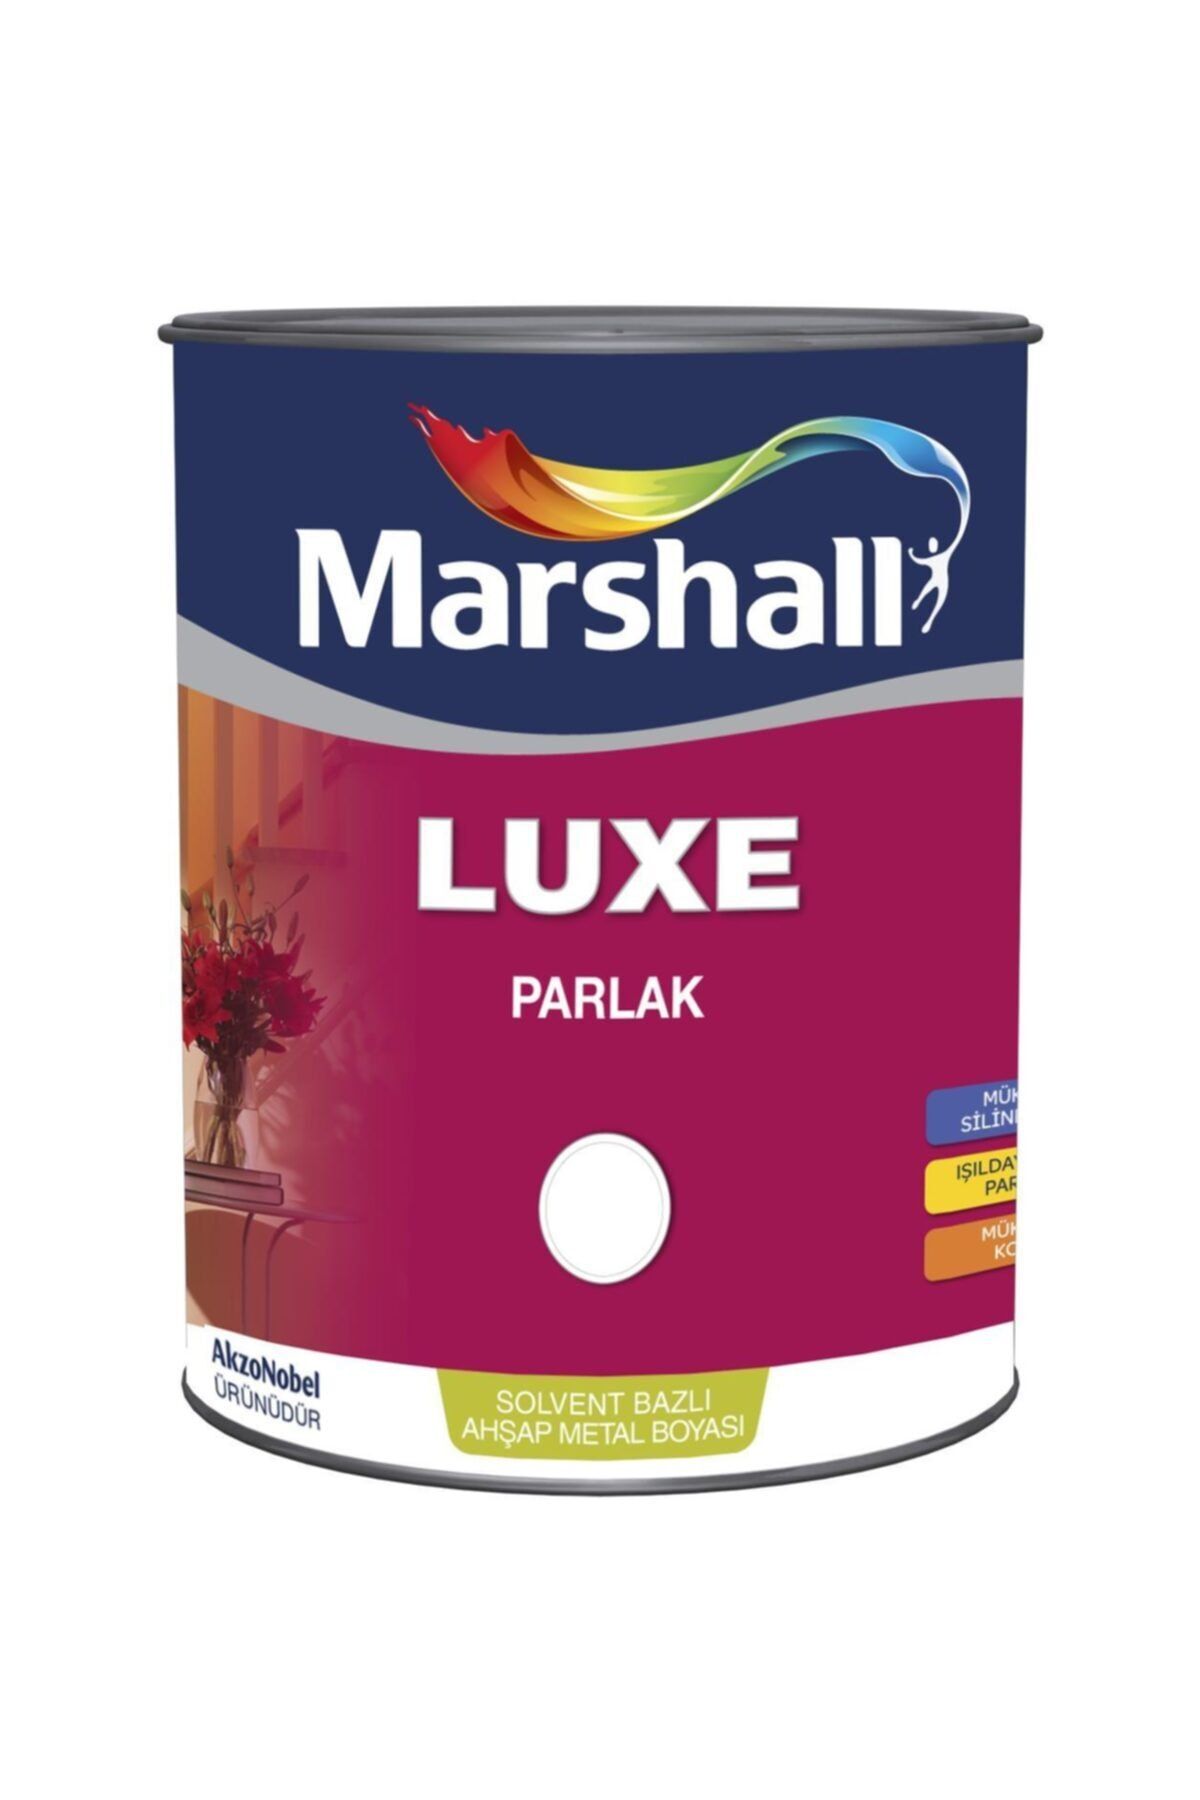 Marshall Luxe Parlak Sentetik Yağlı Boya 2.5 lt Kum Beji